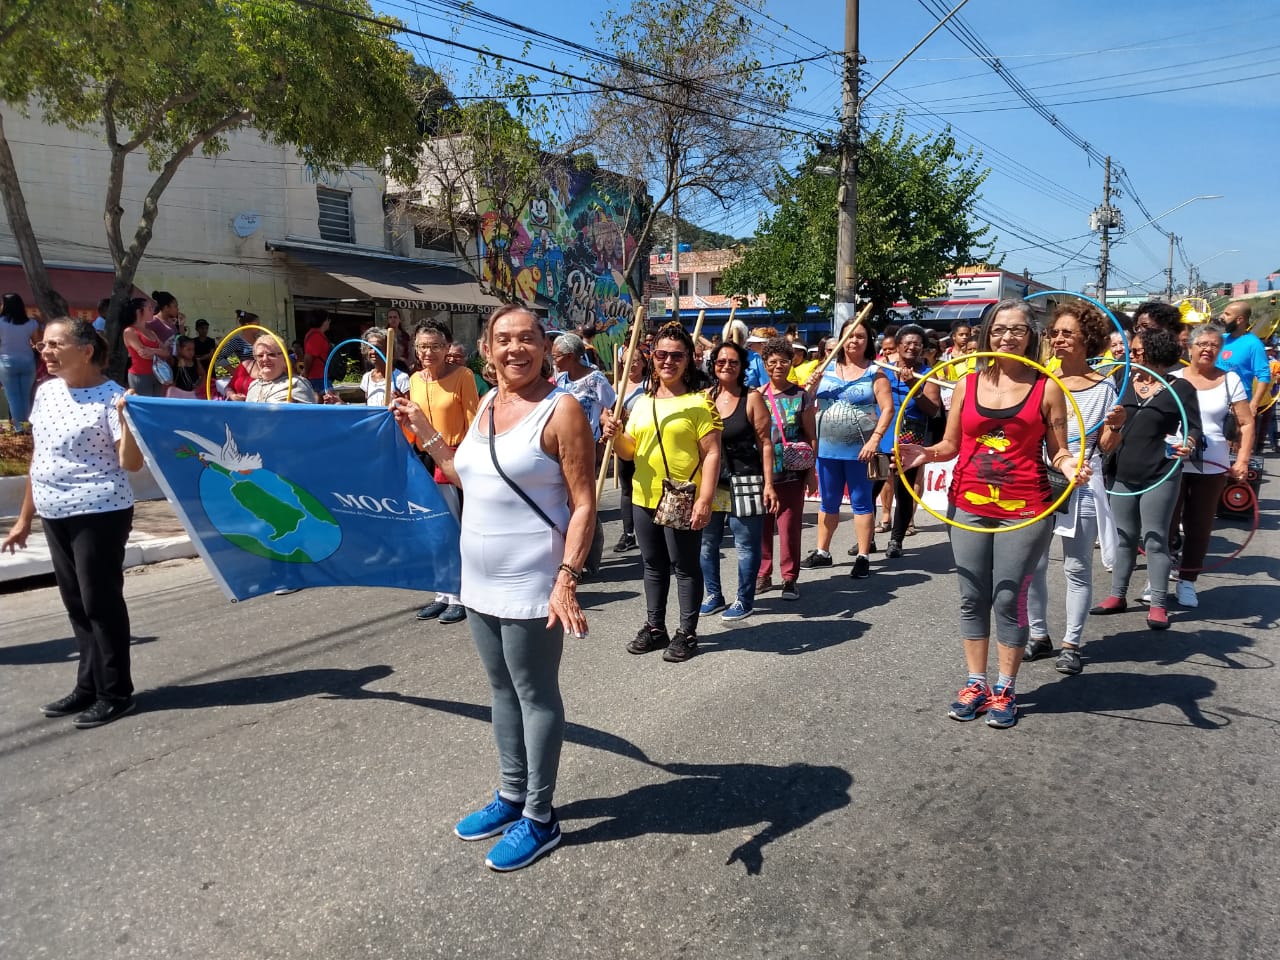 Duas senhoras conviventes do serviço segurando bandeira azul da organização gestora MOCA, enquanto outras mulheres seguem atrás no desfile com bambolês coloridos nas mãos